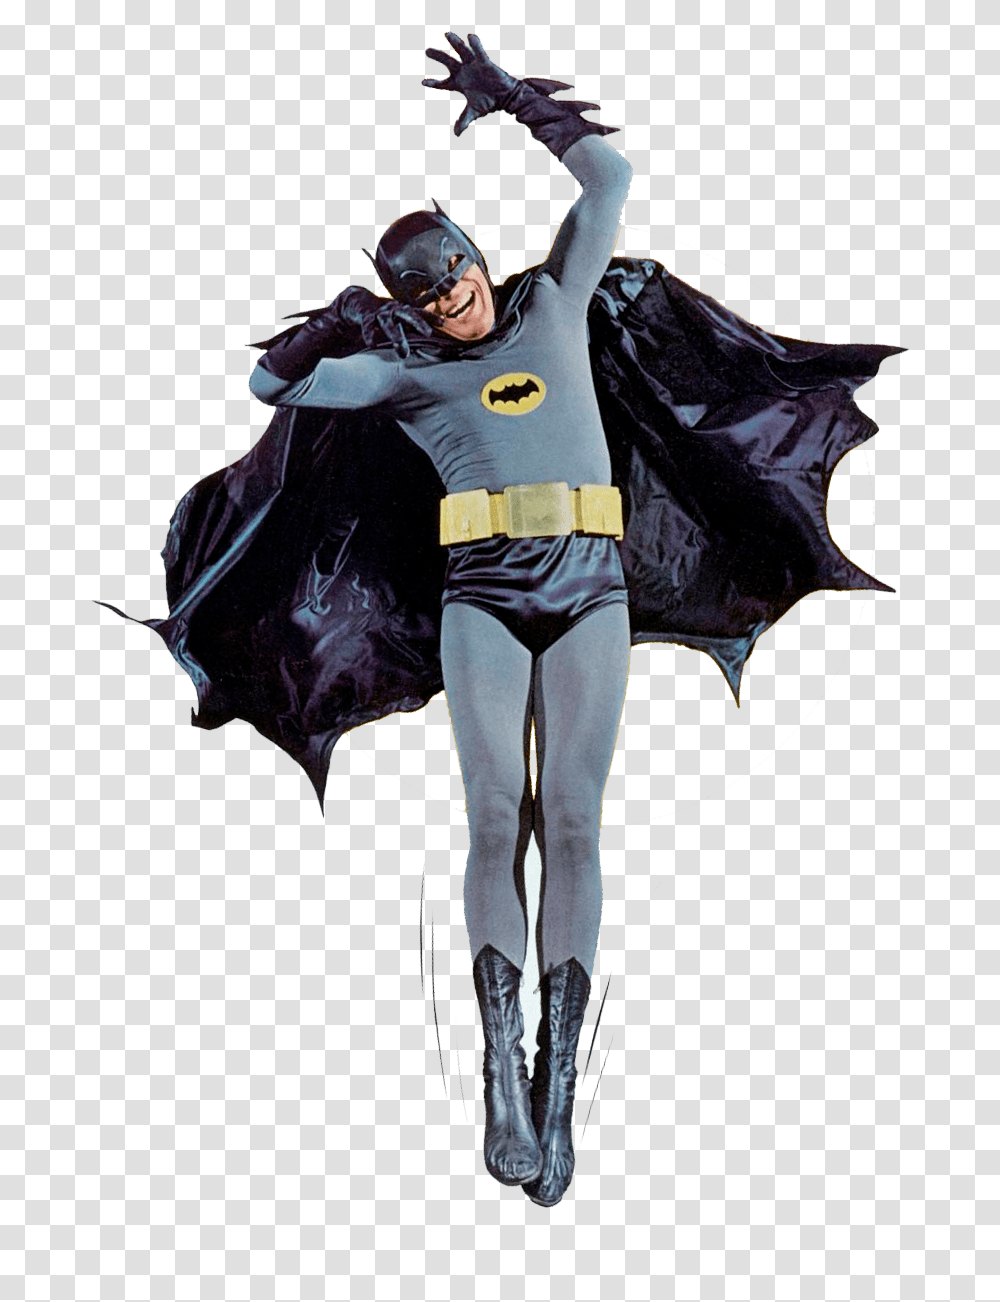 Adam West Batman Suit, Helmet, Apparel, Dance Pose Transparent Png